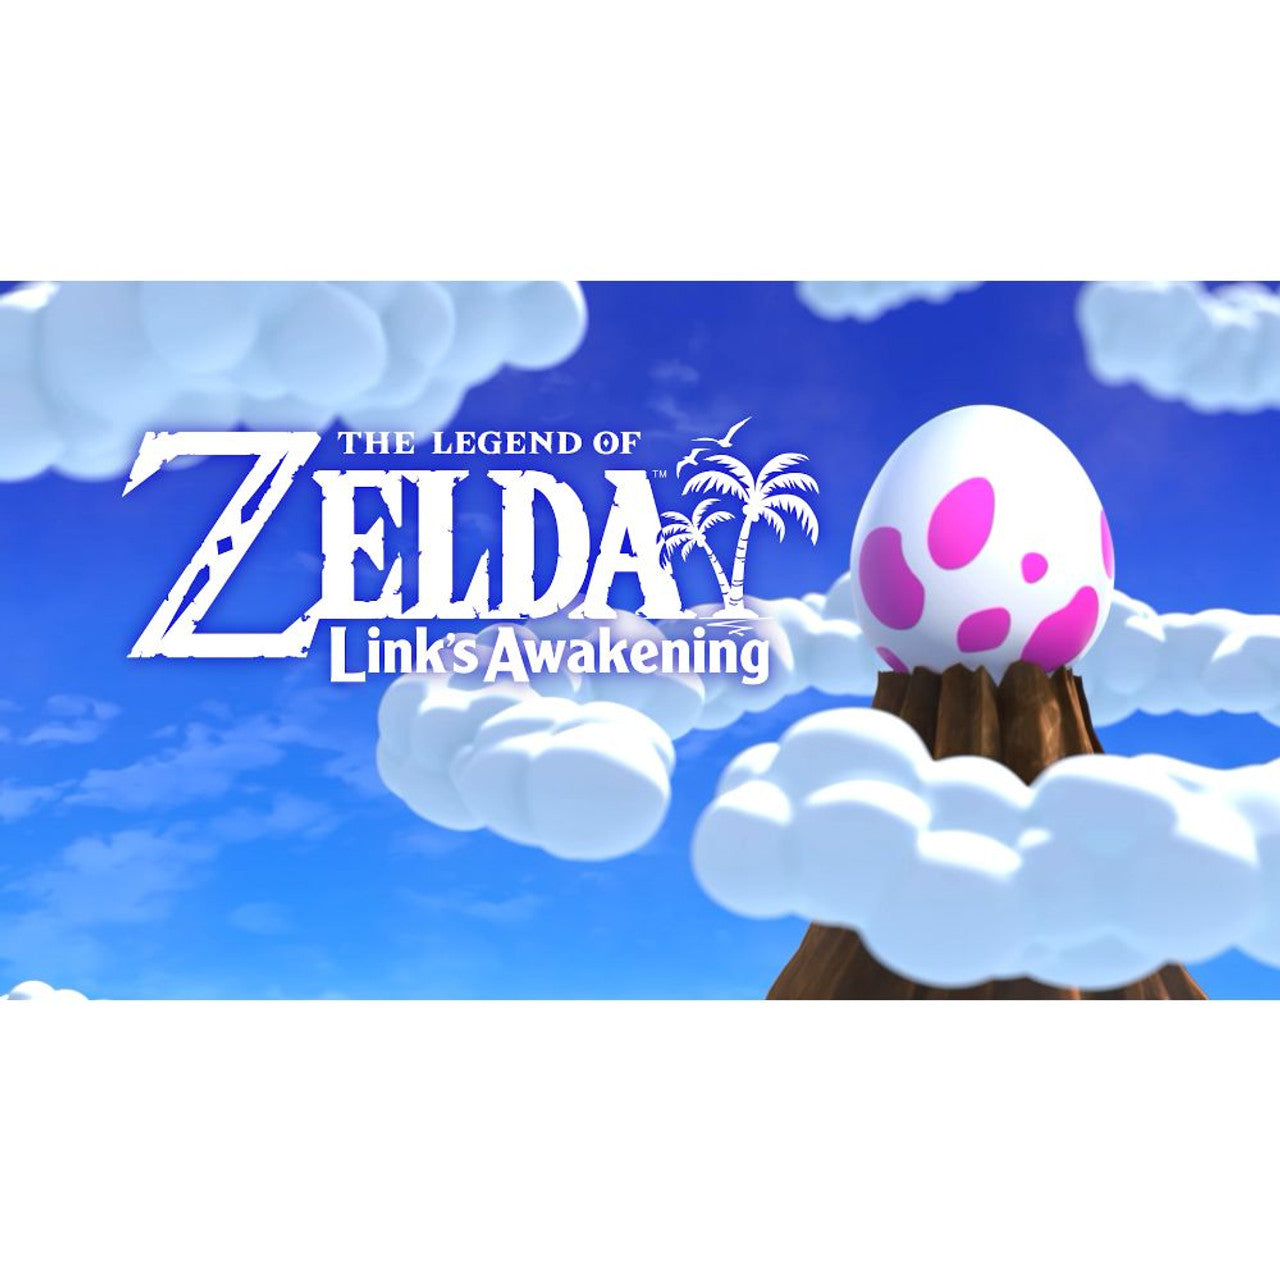 Nintendo - Legend of Zelda: Link's Awakening - Switch